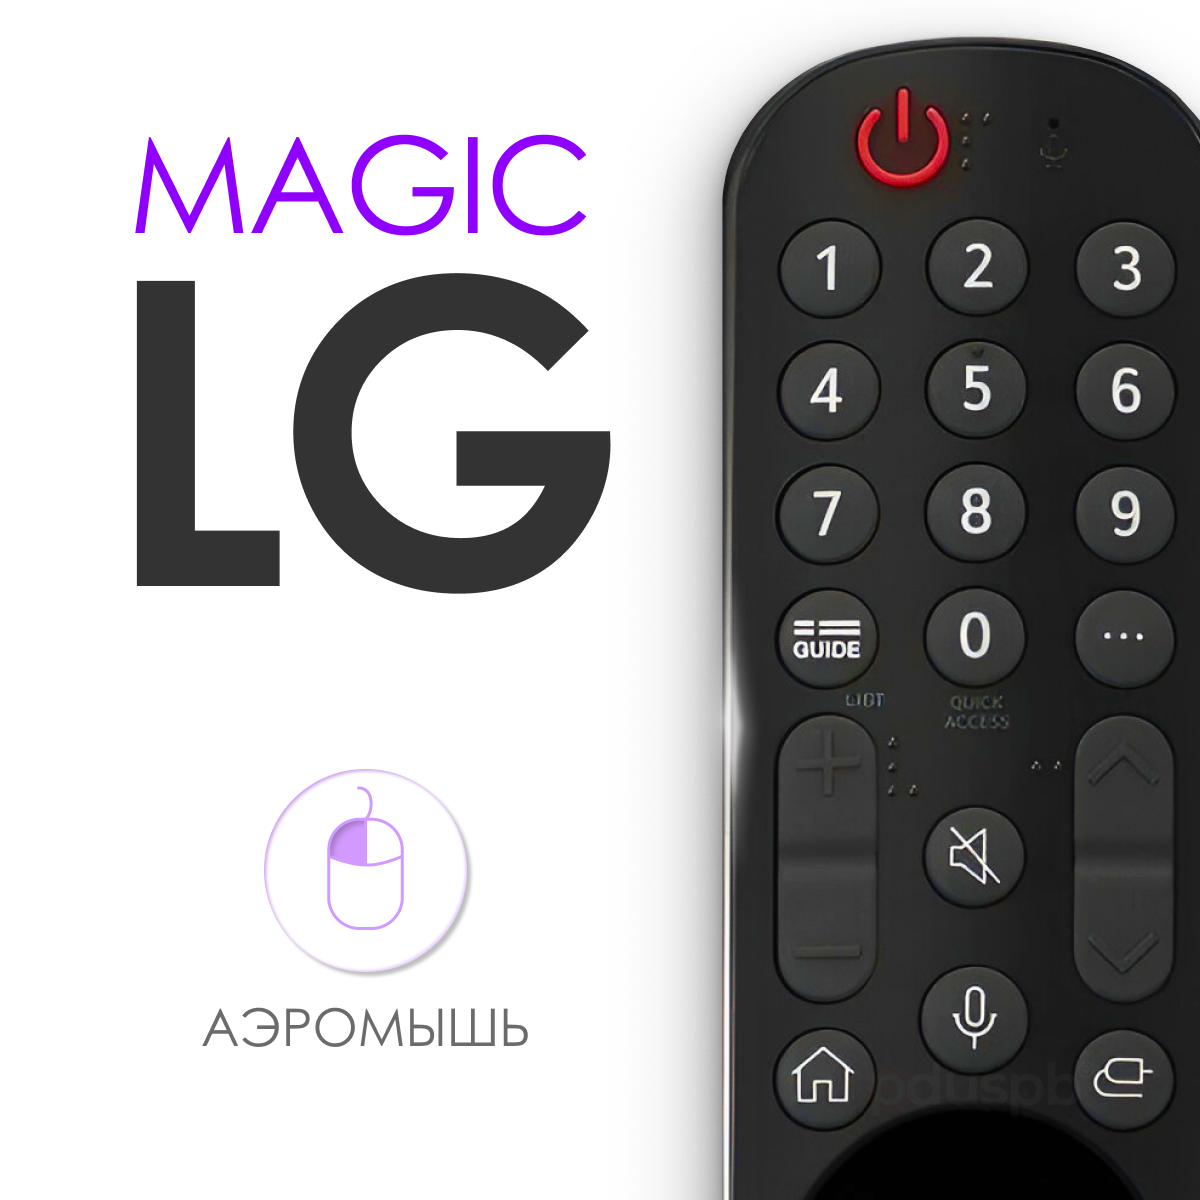 Голосовой пульт LG MR22GA Magic Remote Smart TV (AKB76039905) с функцией Netflix для смарт телевизора Лджи / Лж, аэромышь заменяет MR21GA, MR20GA, AN-MR19BA, MR18BA, MR650A